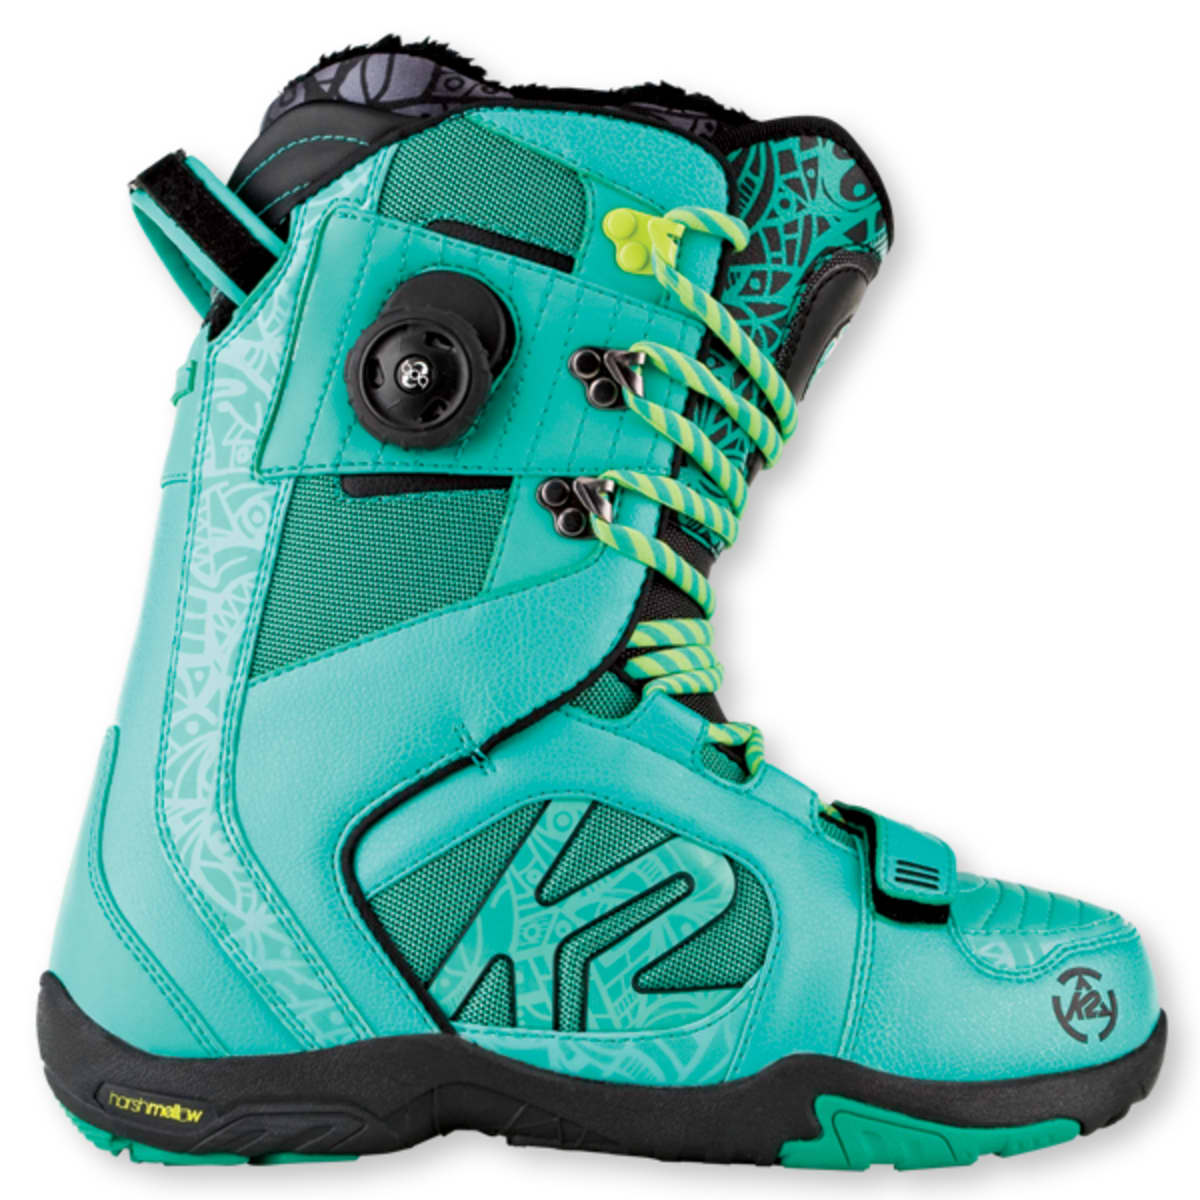 K2 Darko Snowboard Boot - Snowboarder